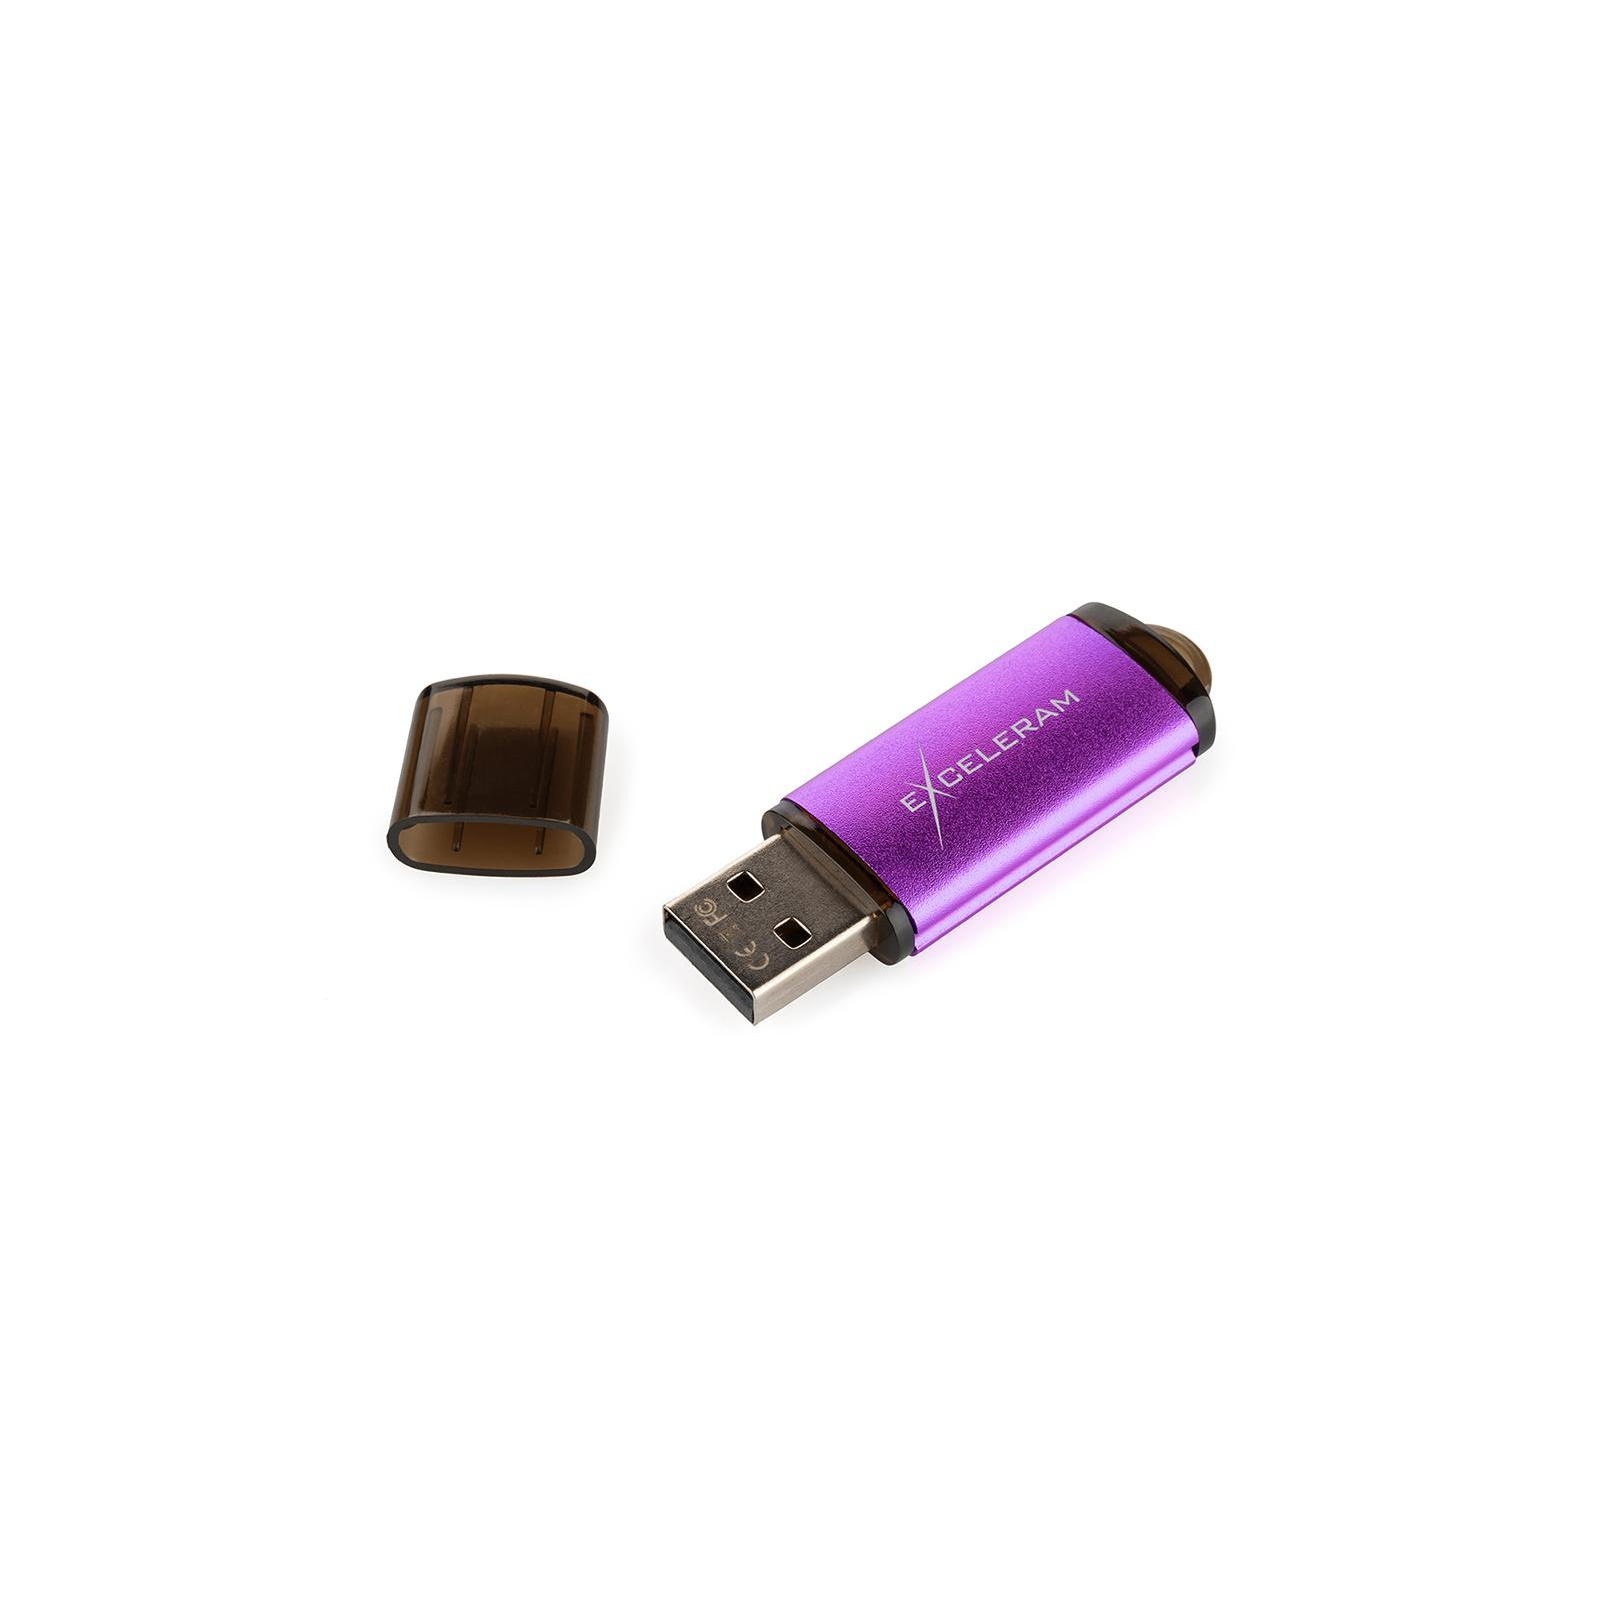 USB флеш накопитель eXceleram 64GB A3 Series Red USB 3.1 Gen 1 (EXA3U3RE64) изображение 6